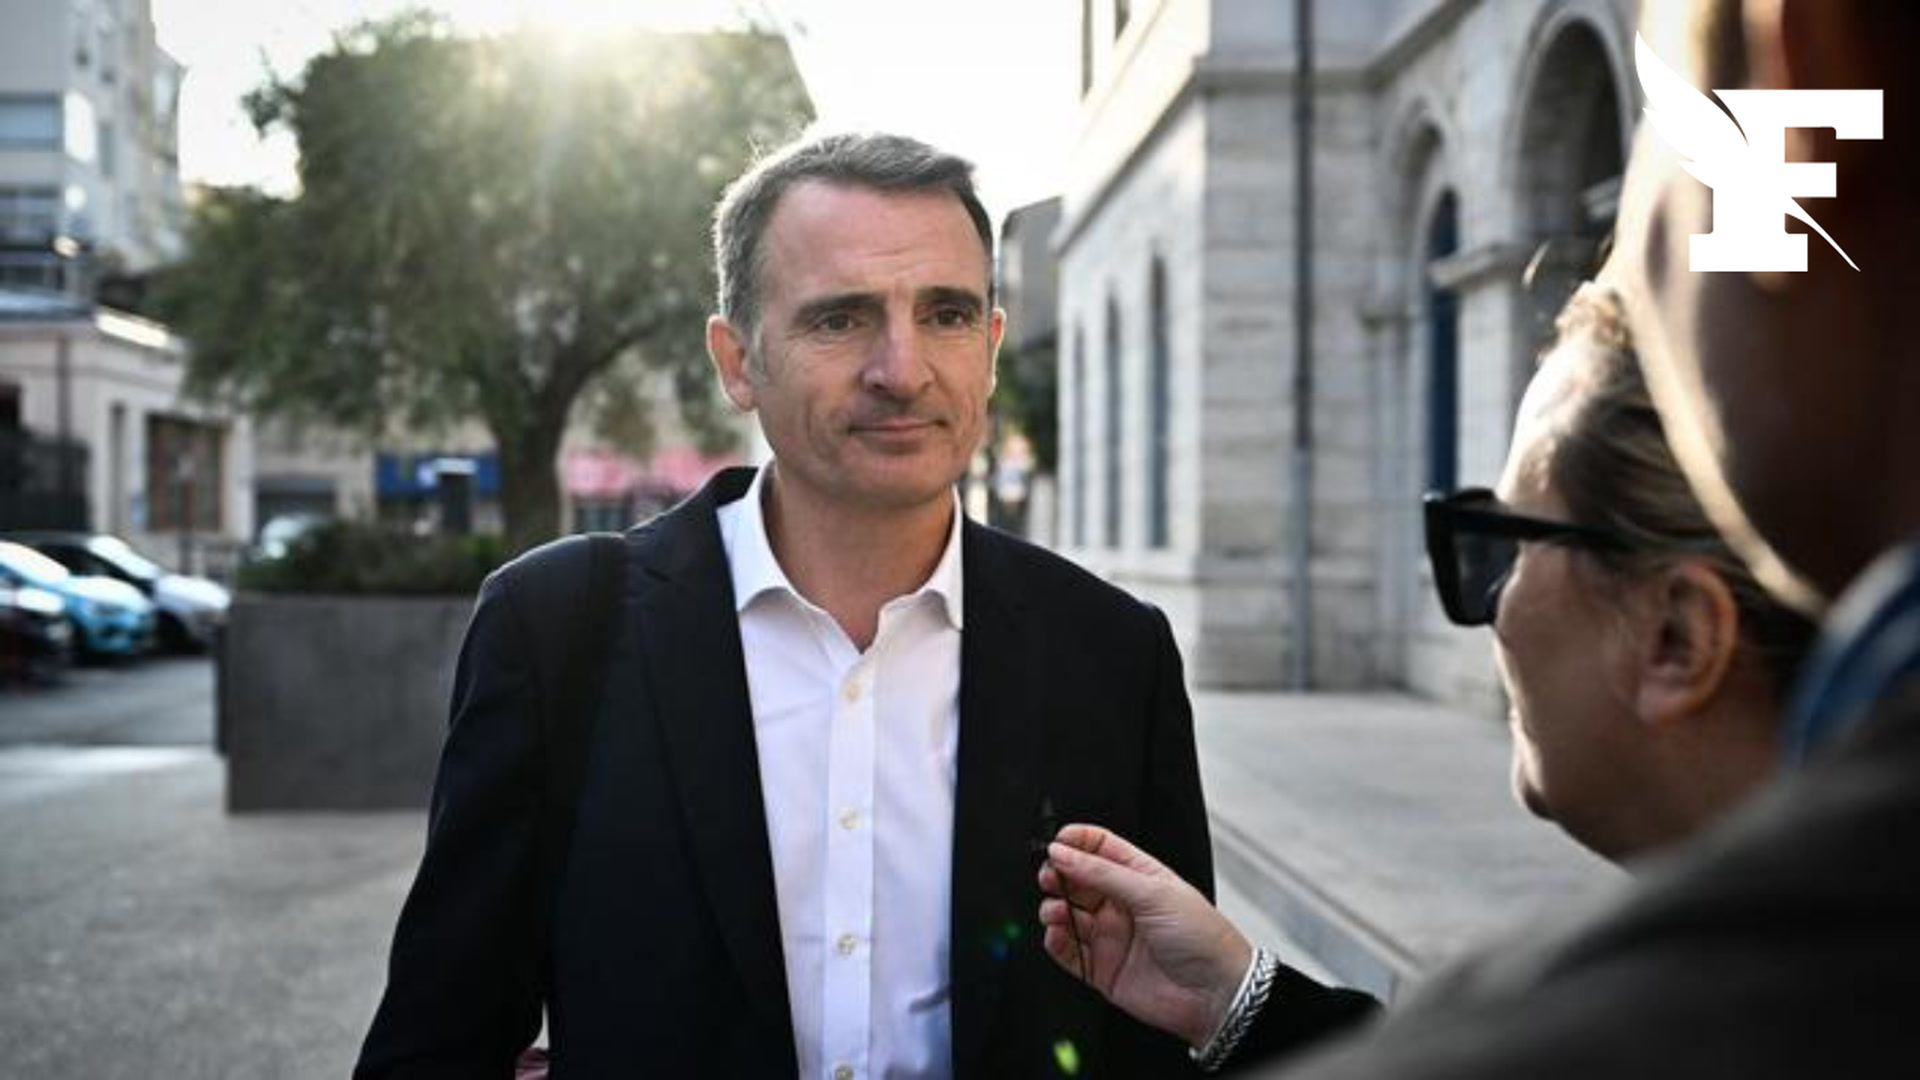 , Le maire EELV de Grenoble réclame la suppression des jours fériés religieux au profit de fêtes laïques